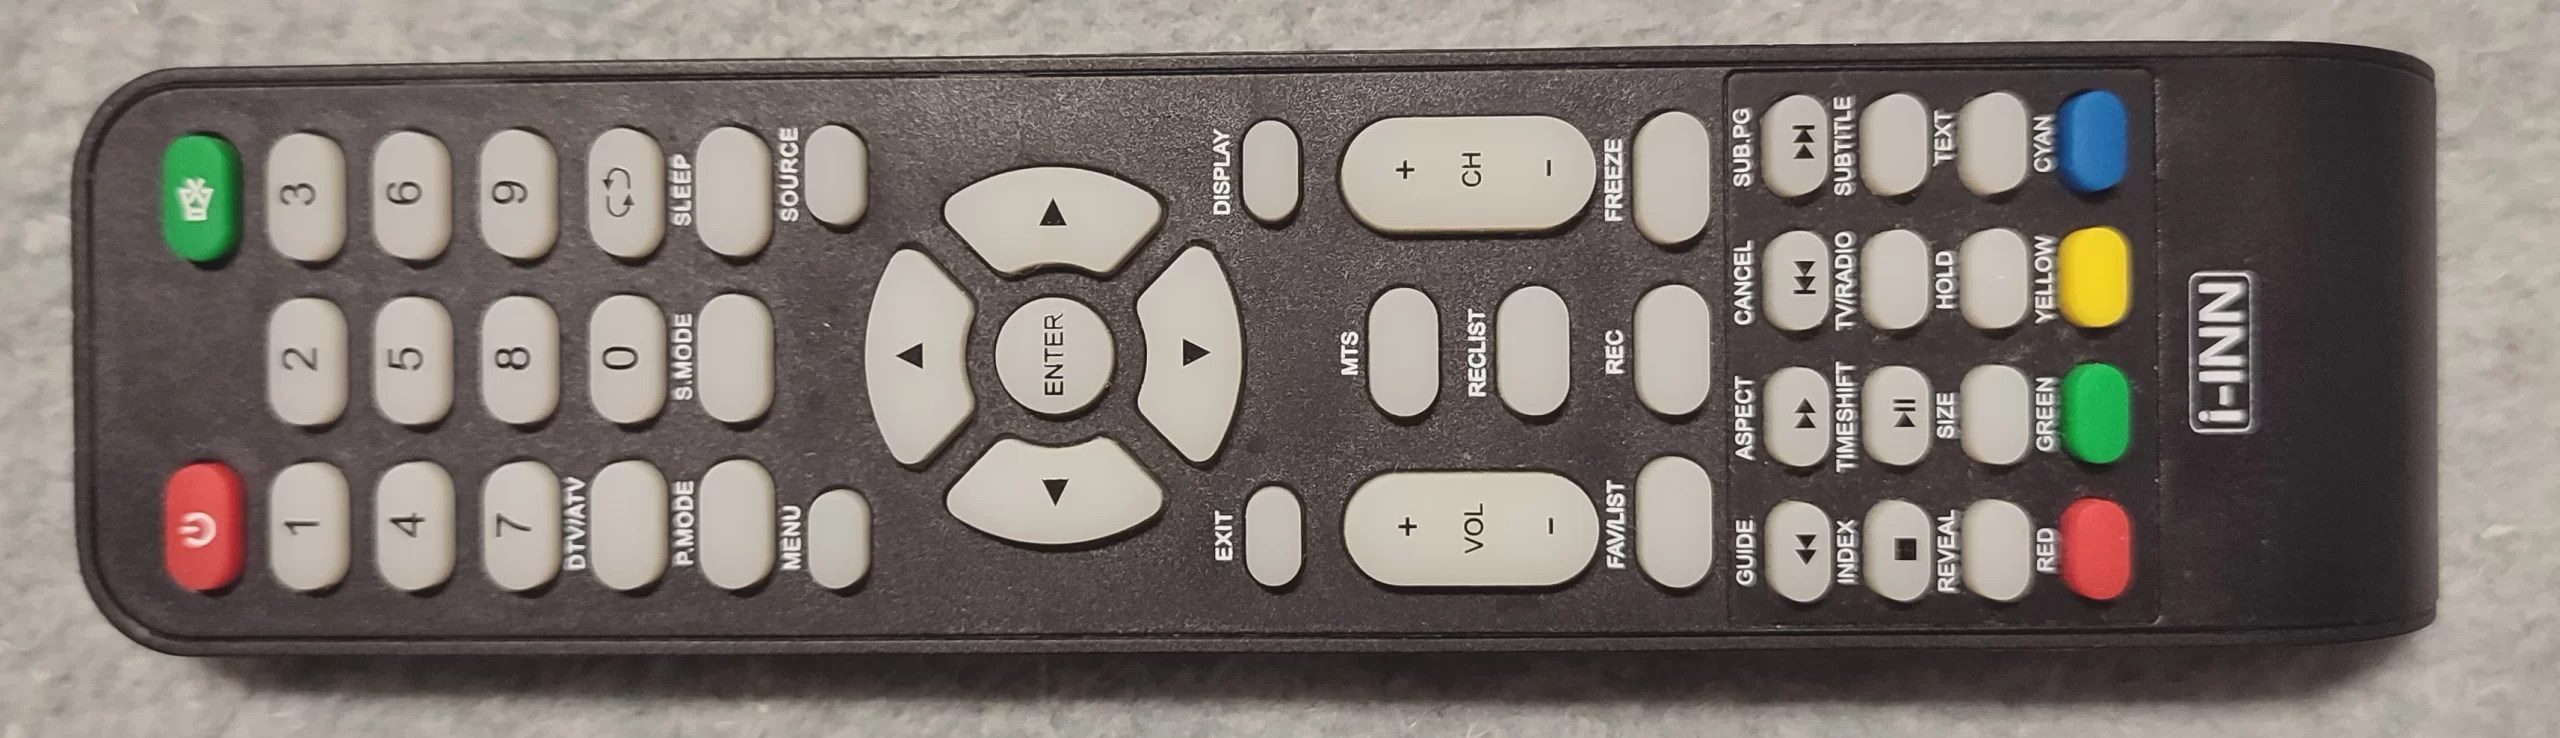 Telecomando originale per TV Selectline - TV Modules